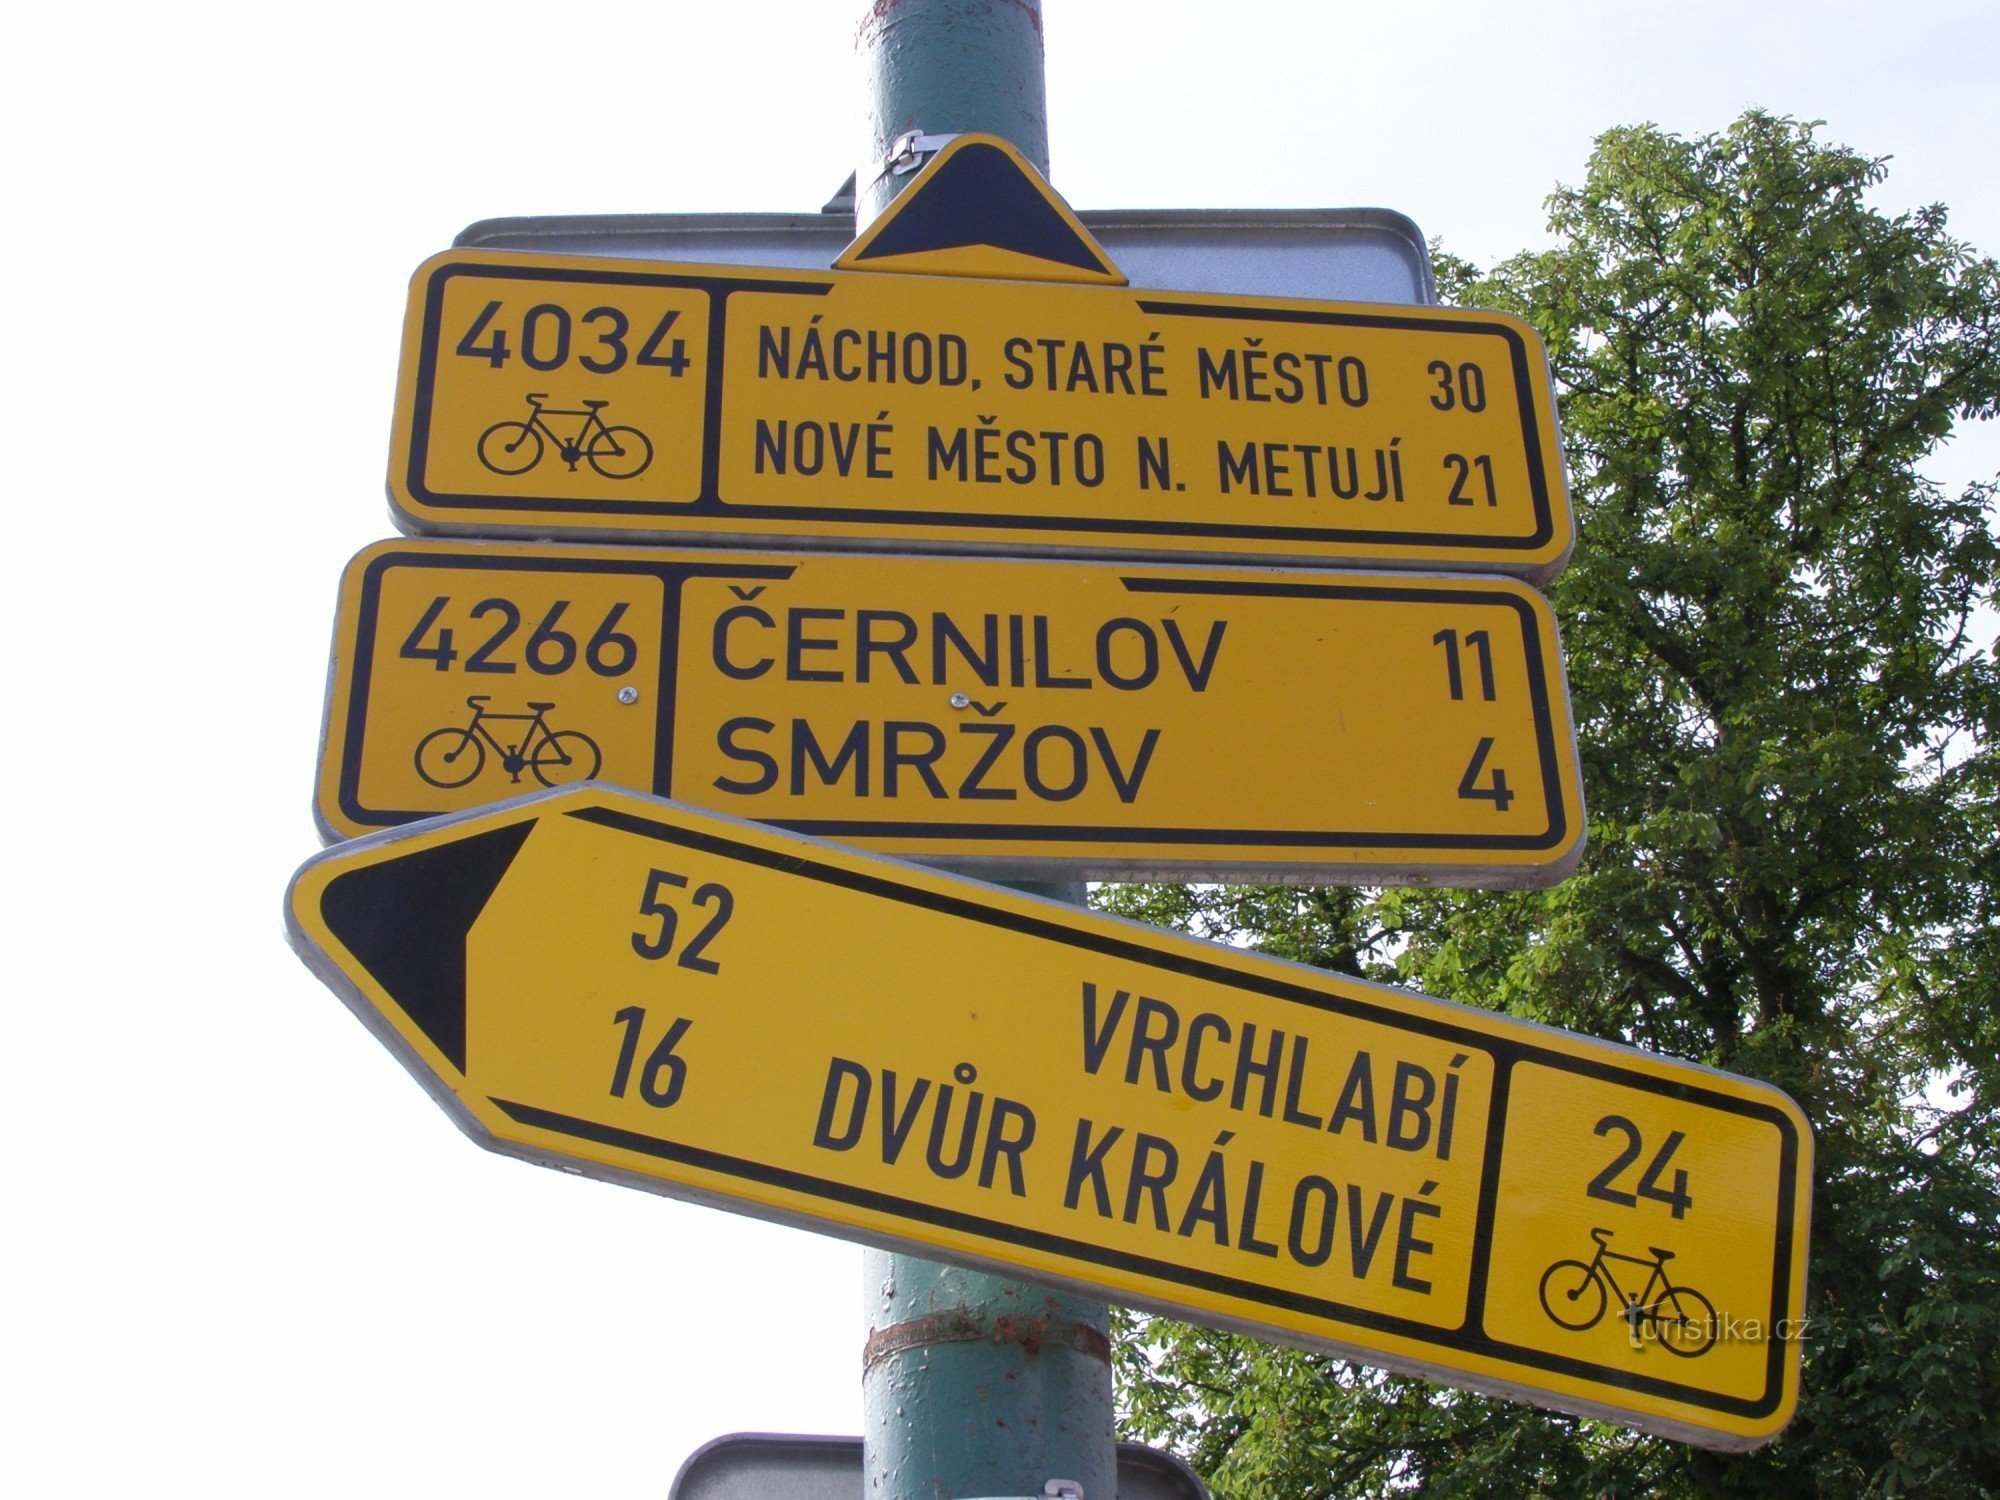 サイクルツーリズムの交差点 - Josefov、橋の近く